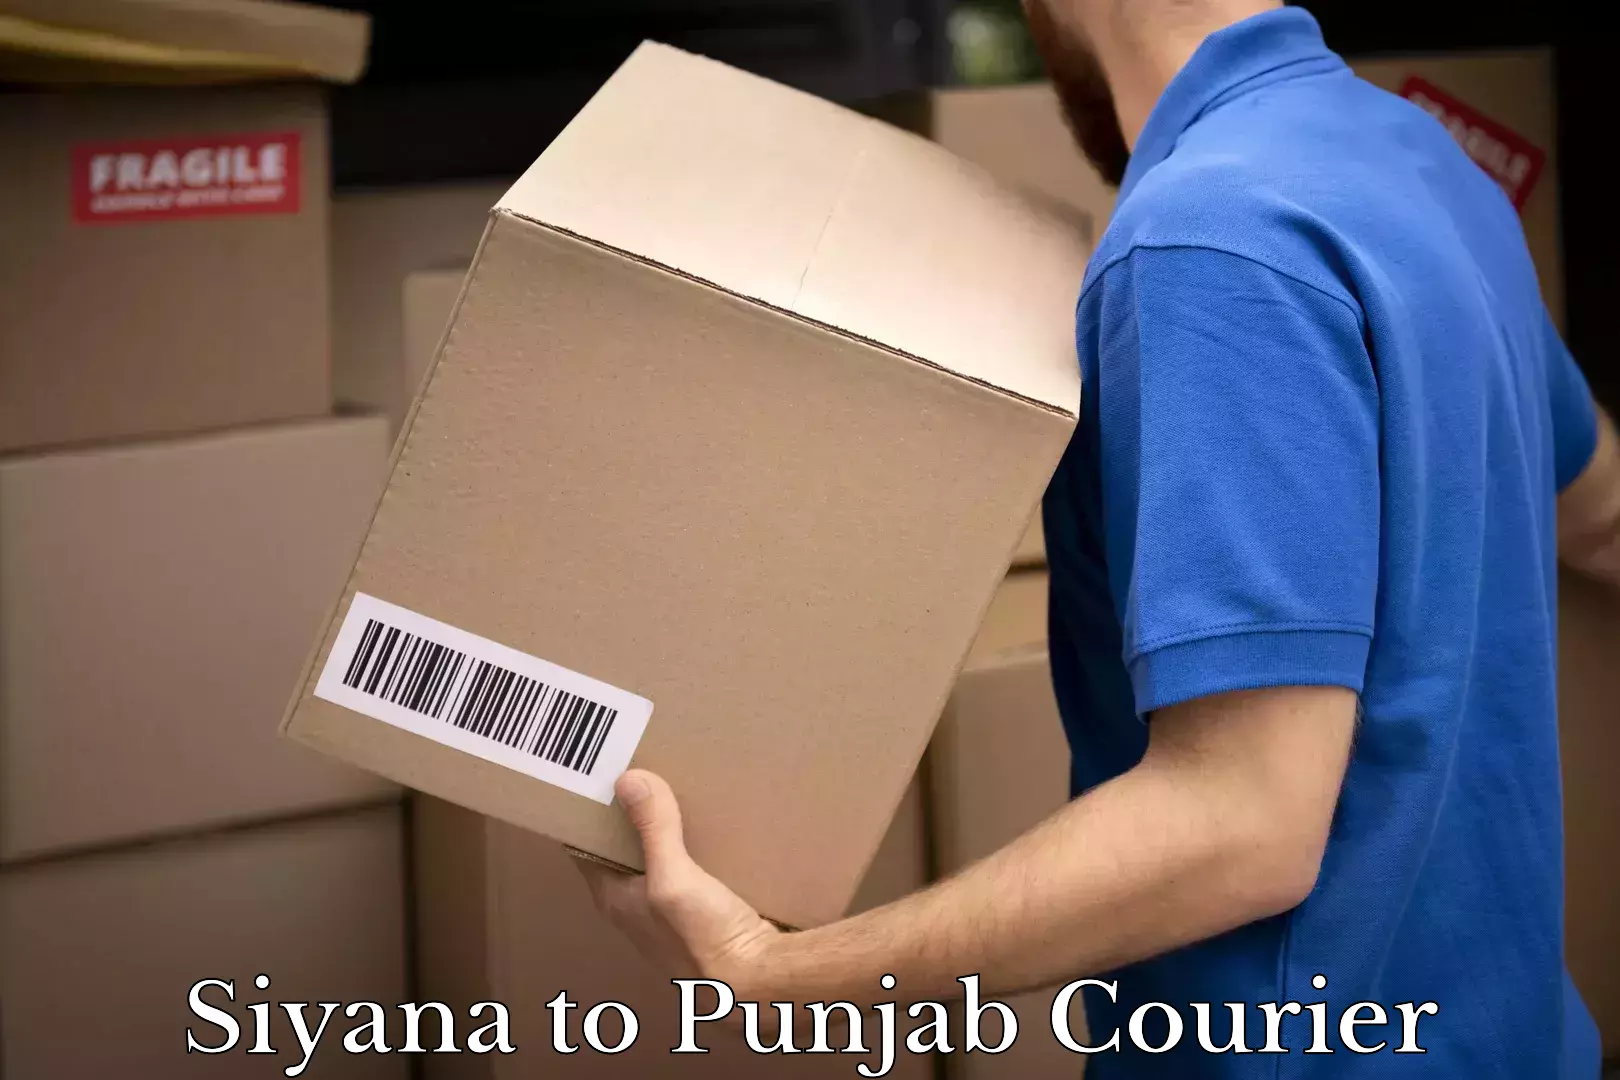 Courier membership in Siyana to Punjab